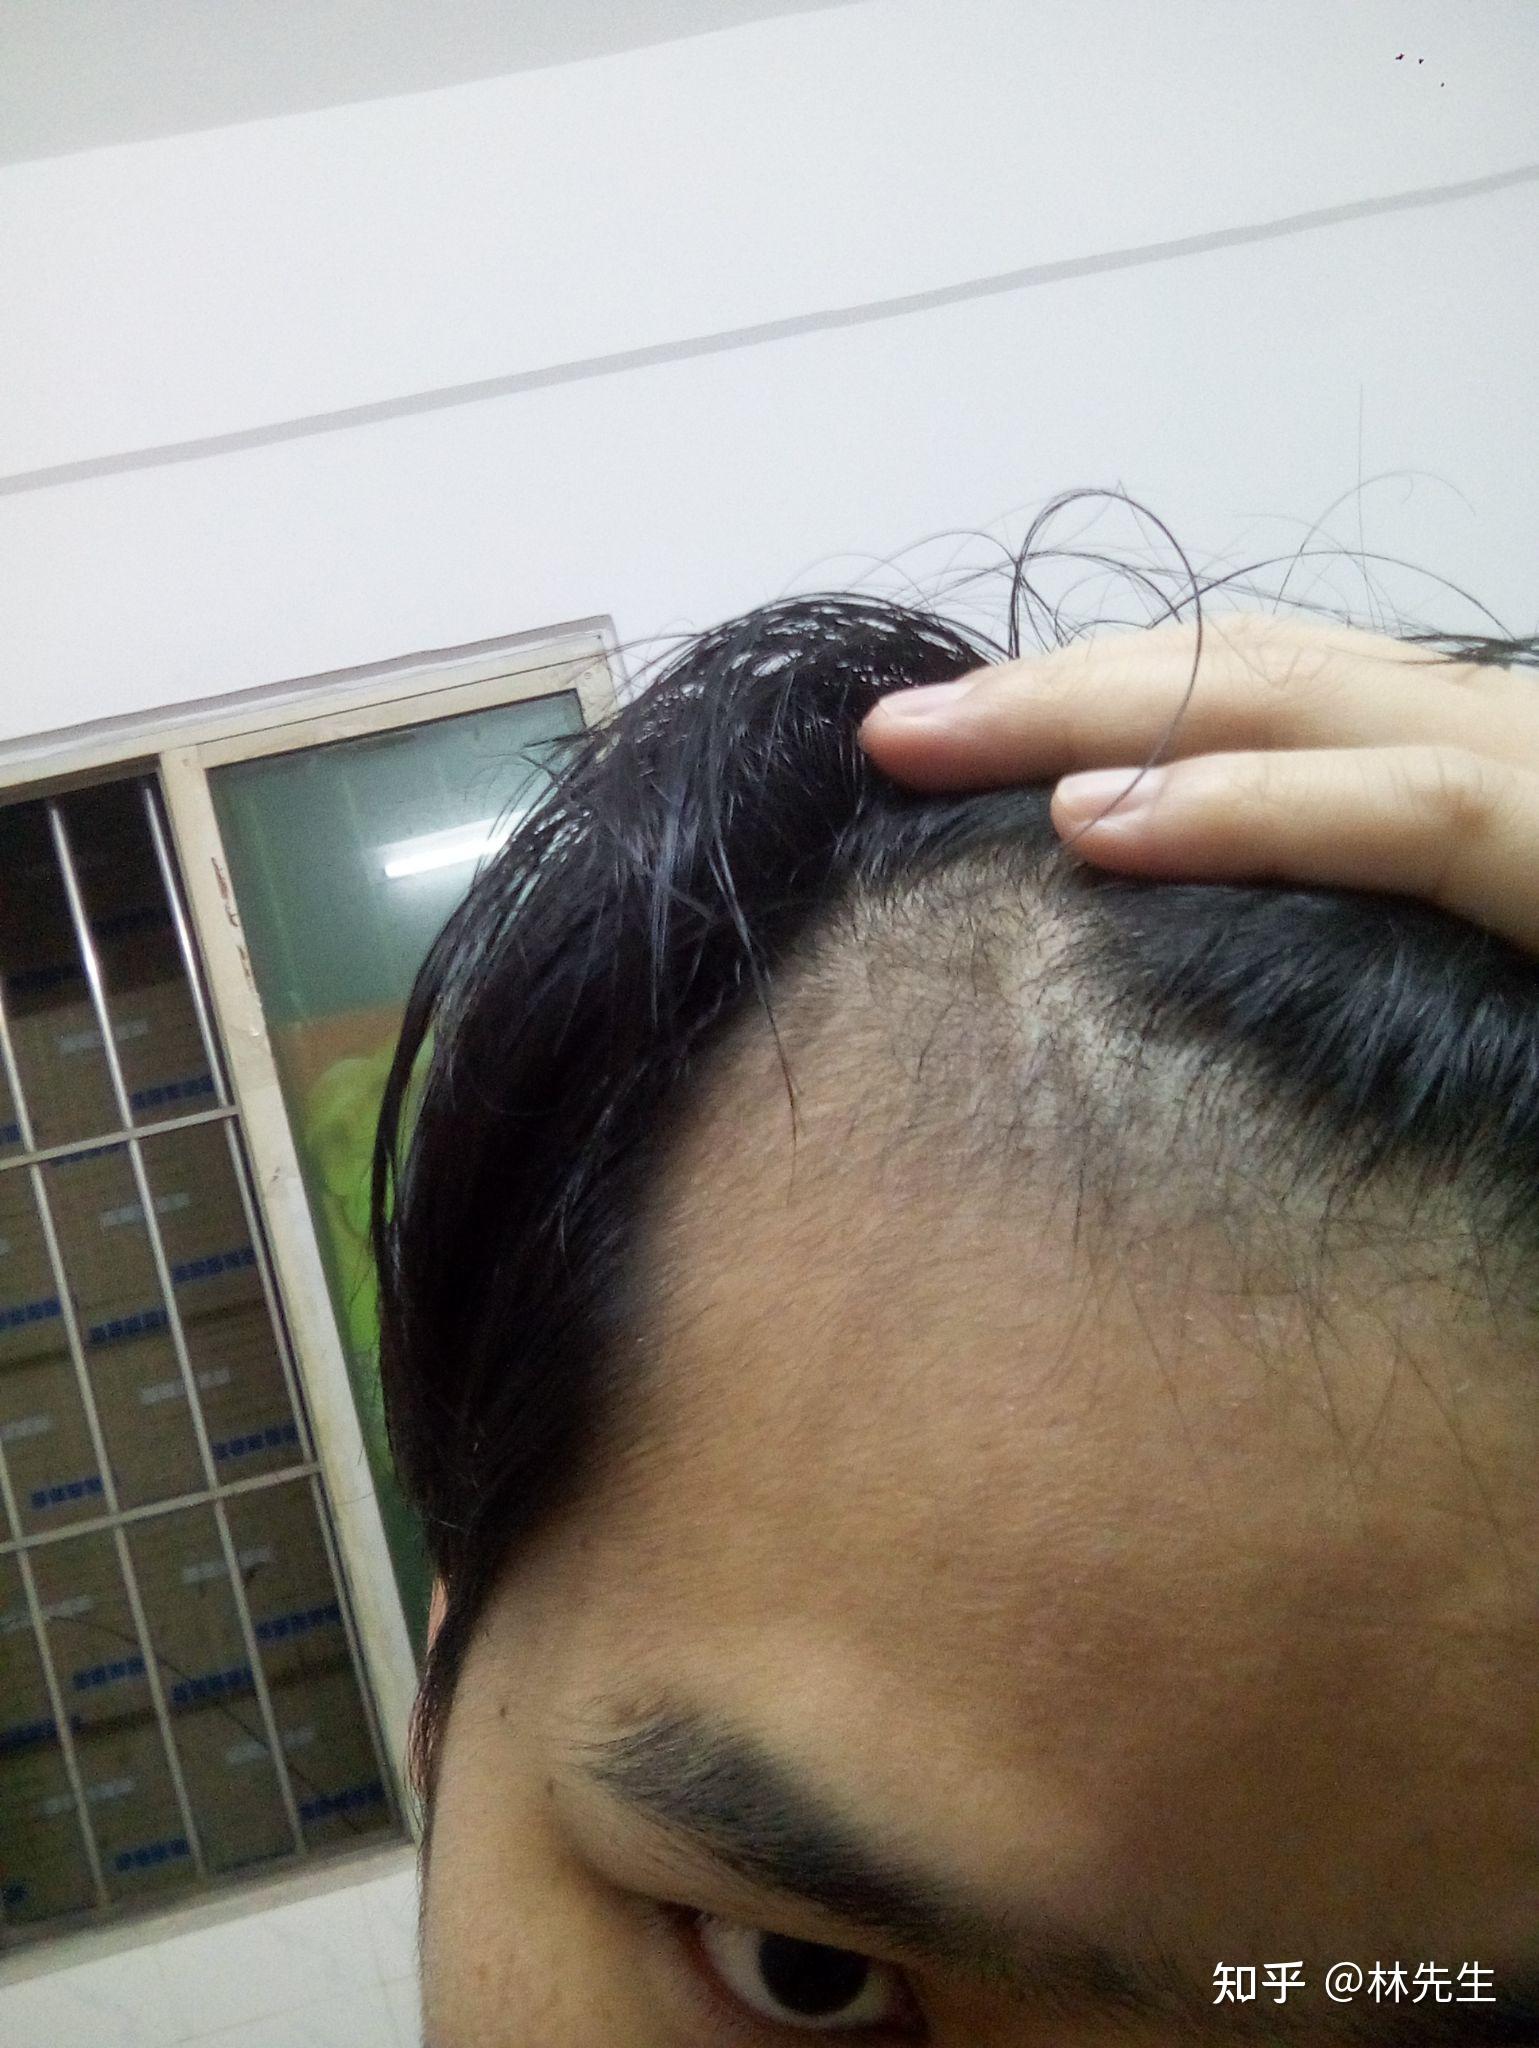 治疗m型脱发,用米诺加非那第二个月 